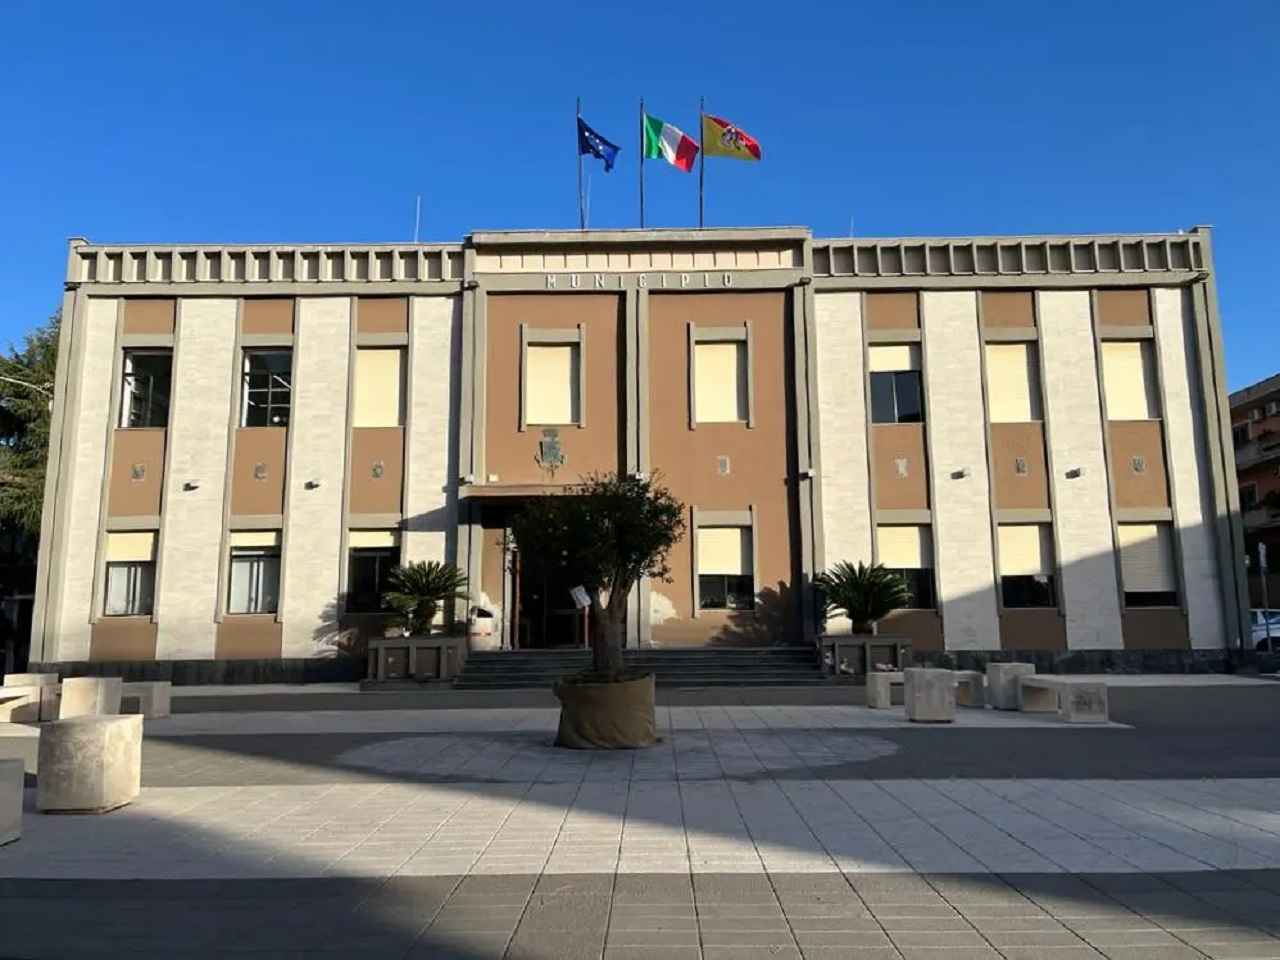 Accesso ispettivo al Comune di Tremestieri Etneo: la verifica delle accuse a carico dell’ex sindaco Santi Rando